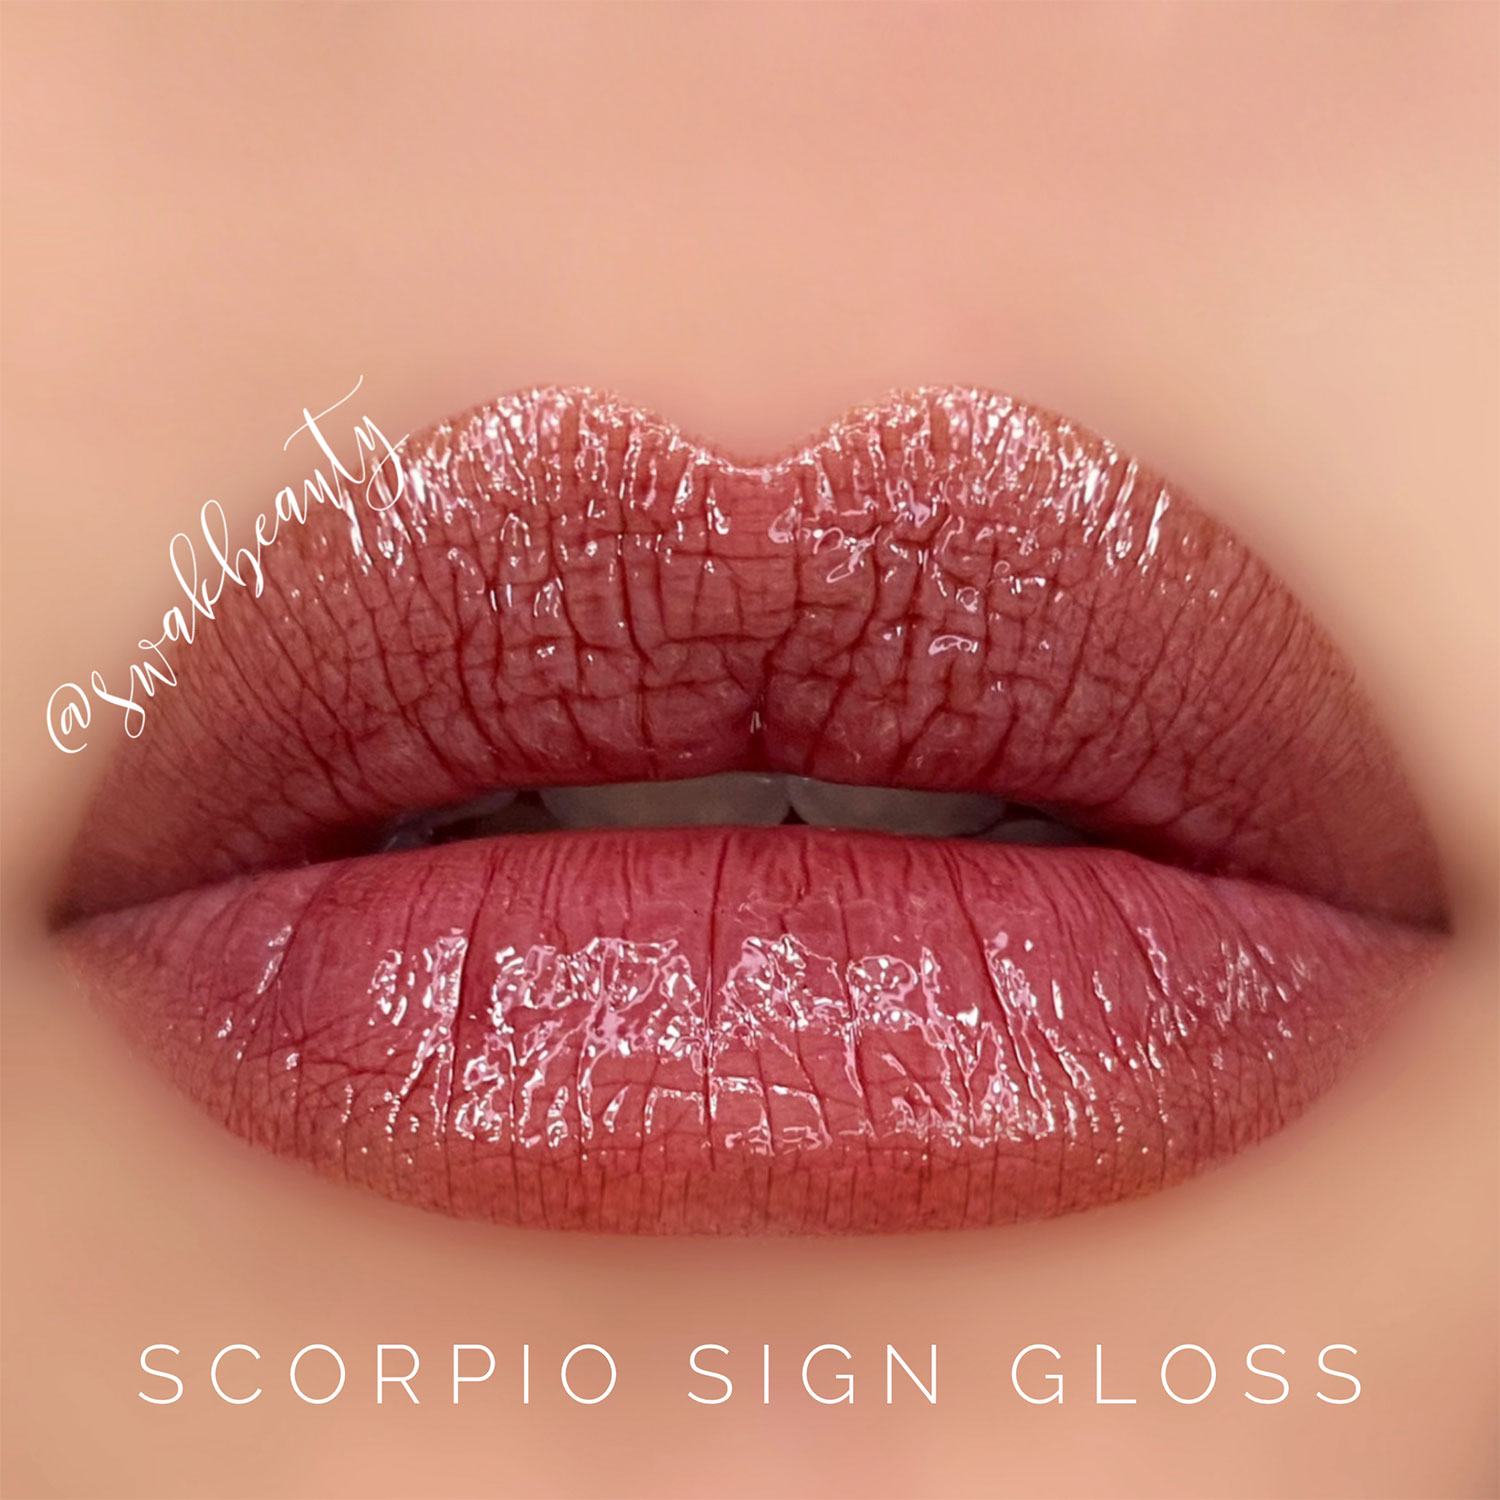 ScorpioSignGloss-lips